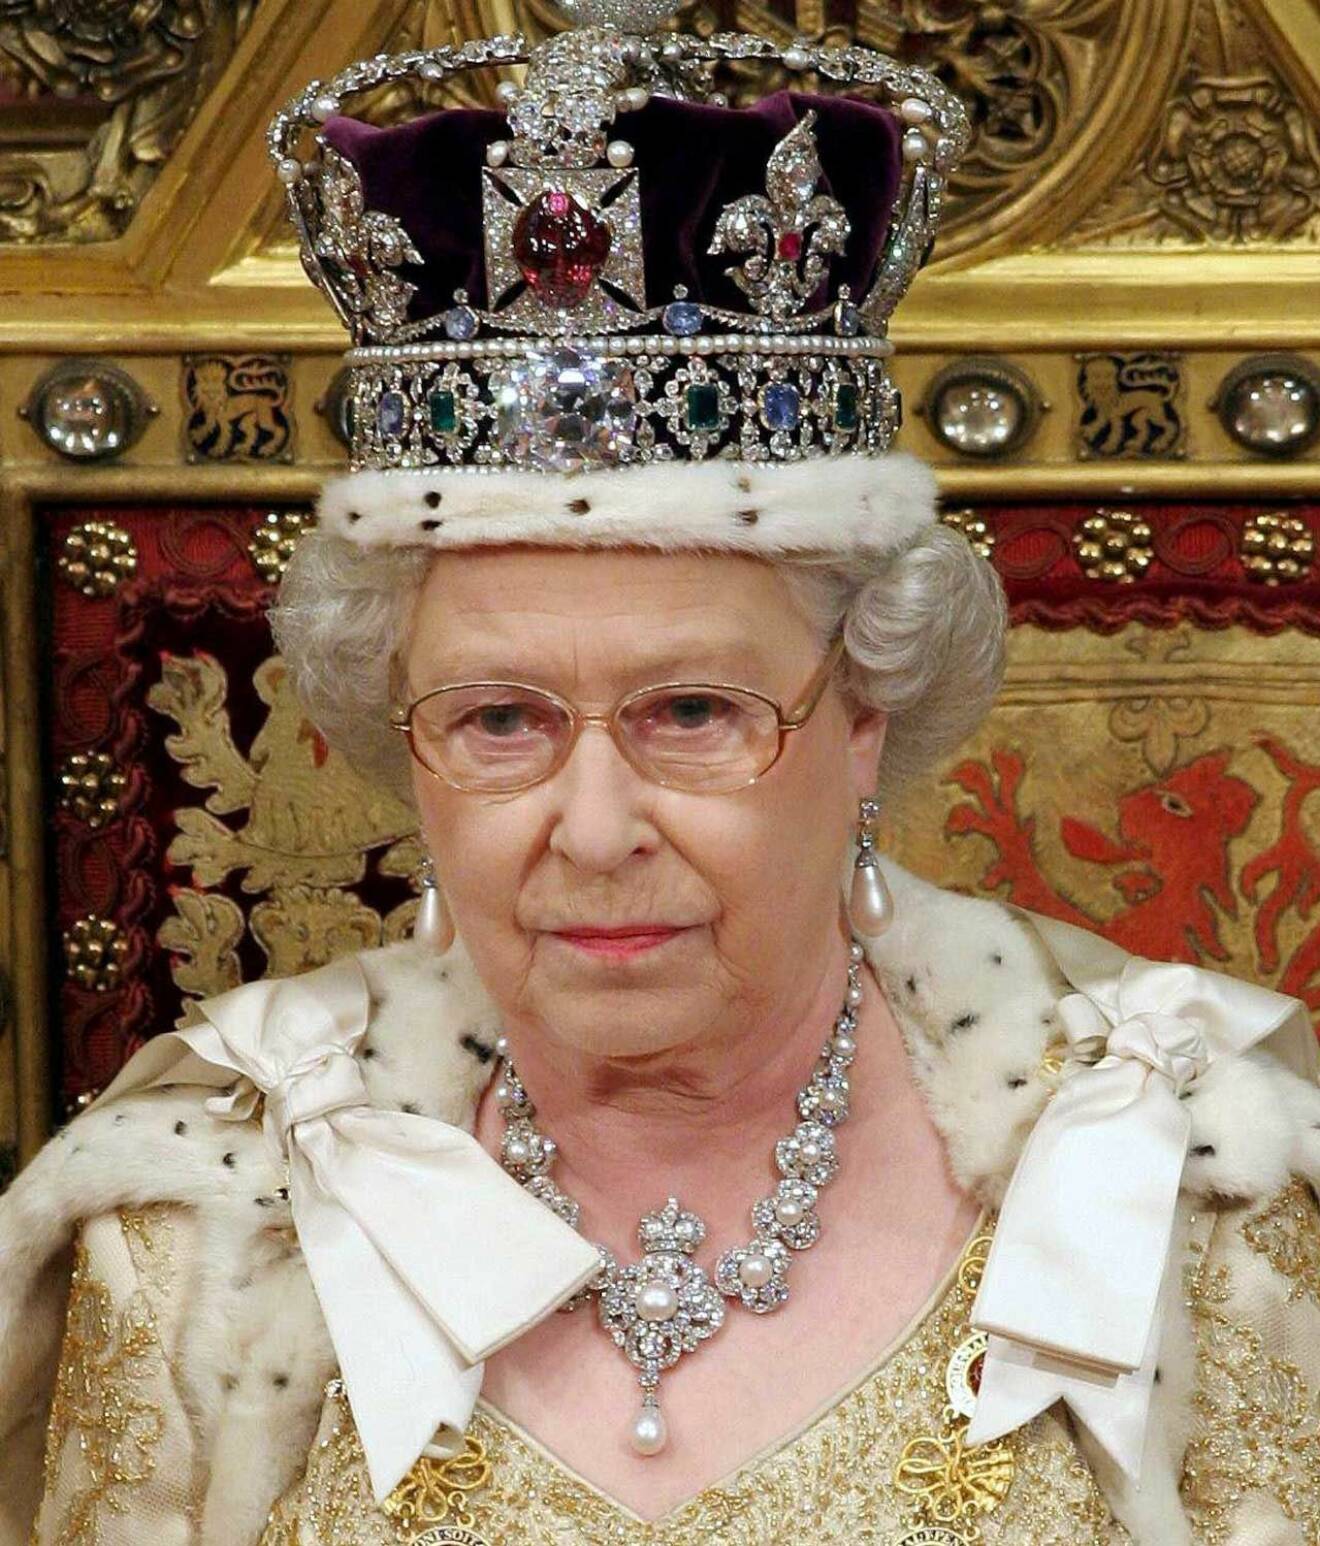 Drottning Elizabeth är ”old school”. Respekt!